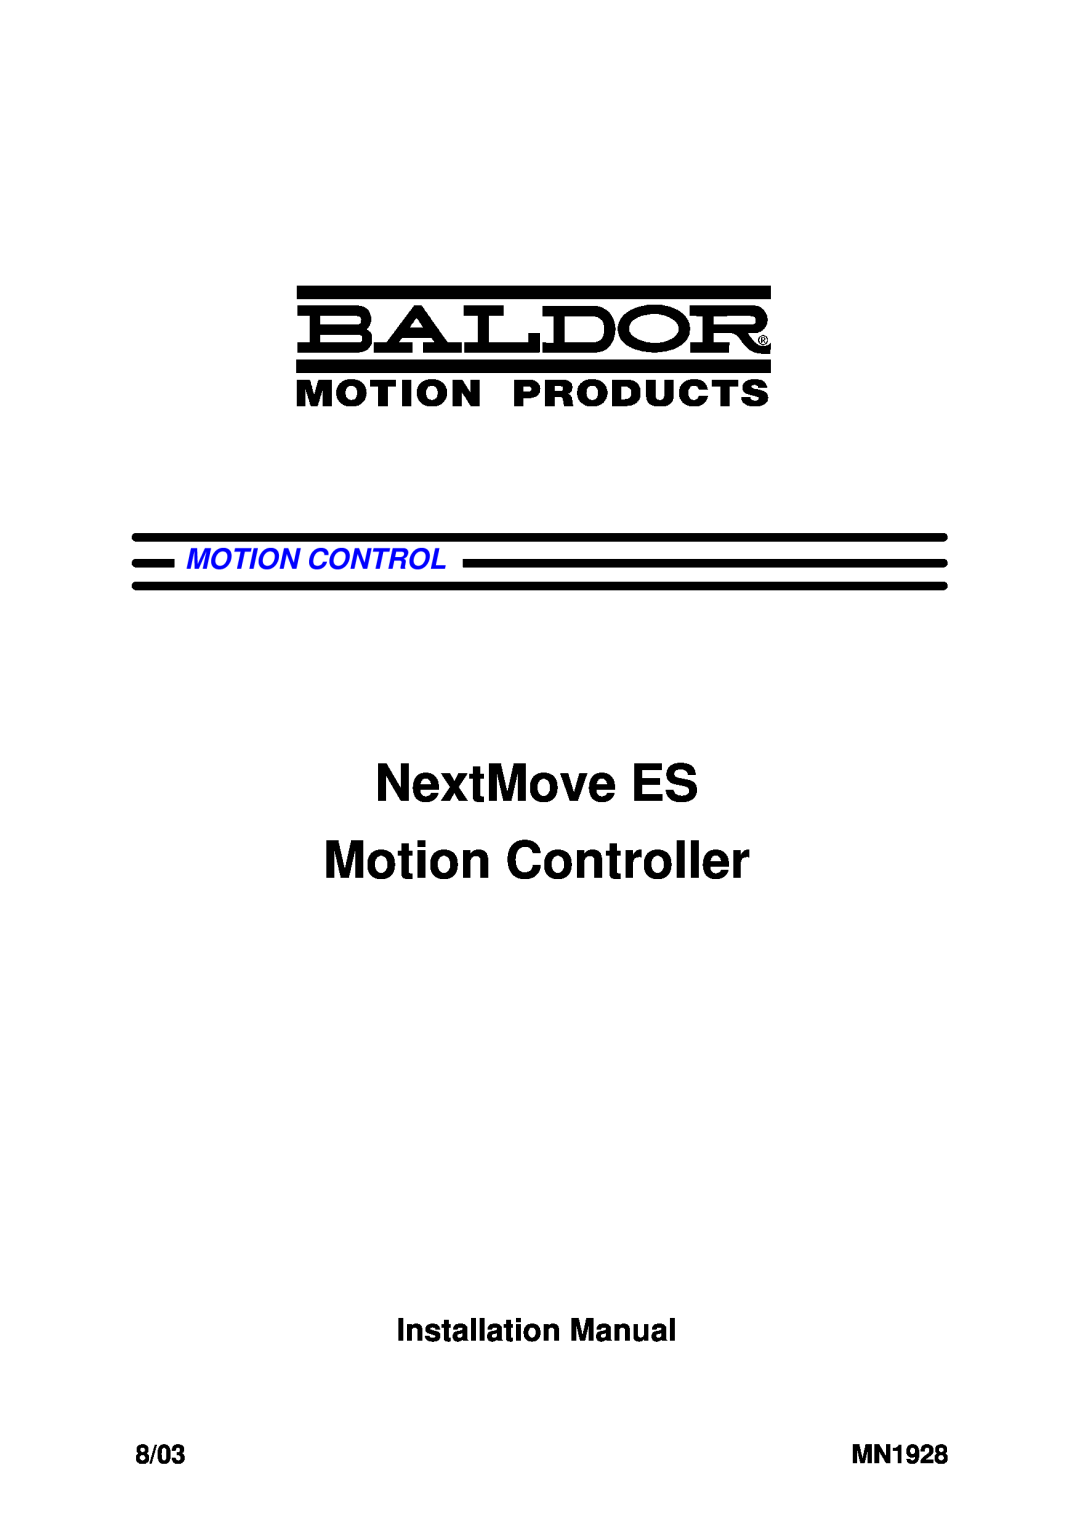 Baldor MN1928 installation manual NextMove ES Motion Controller, Installation Manual, 01/05 